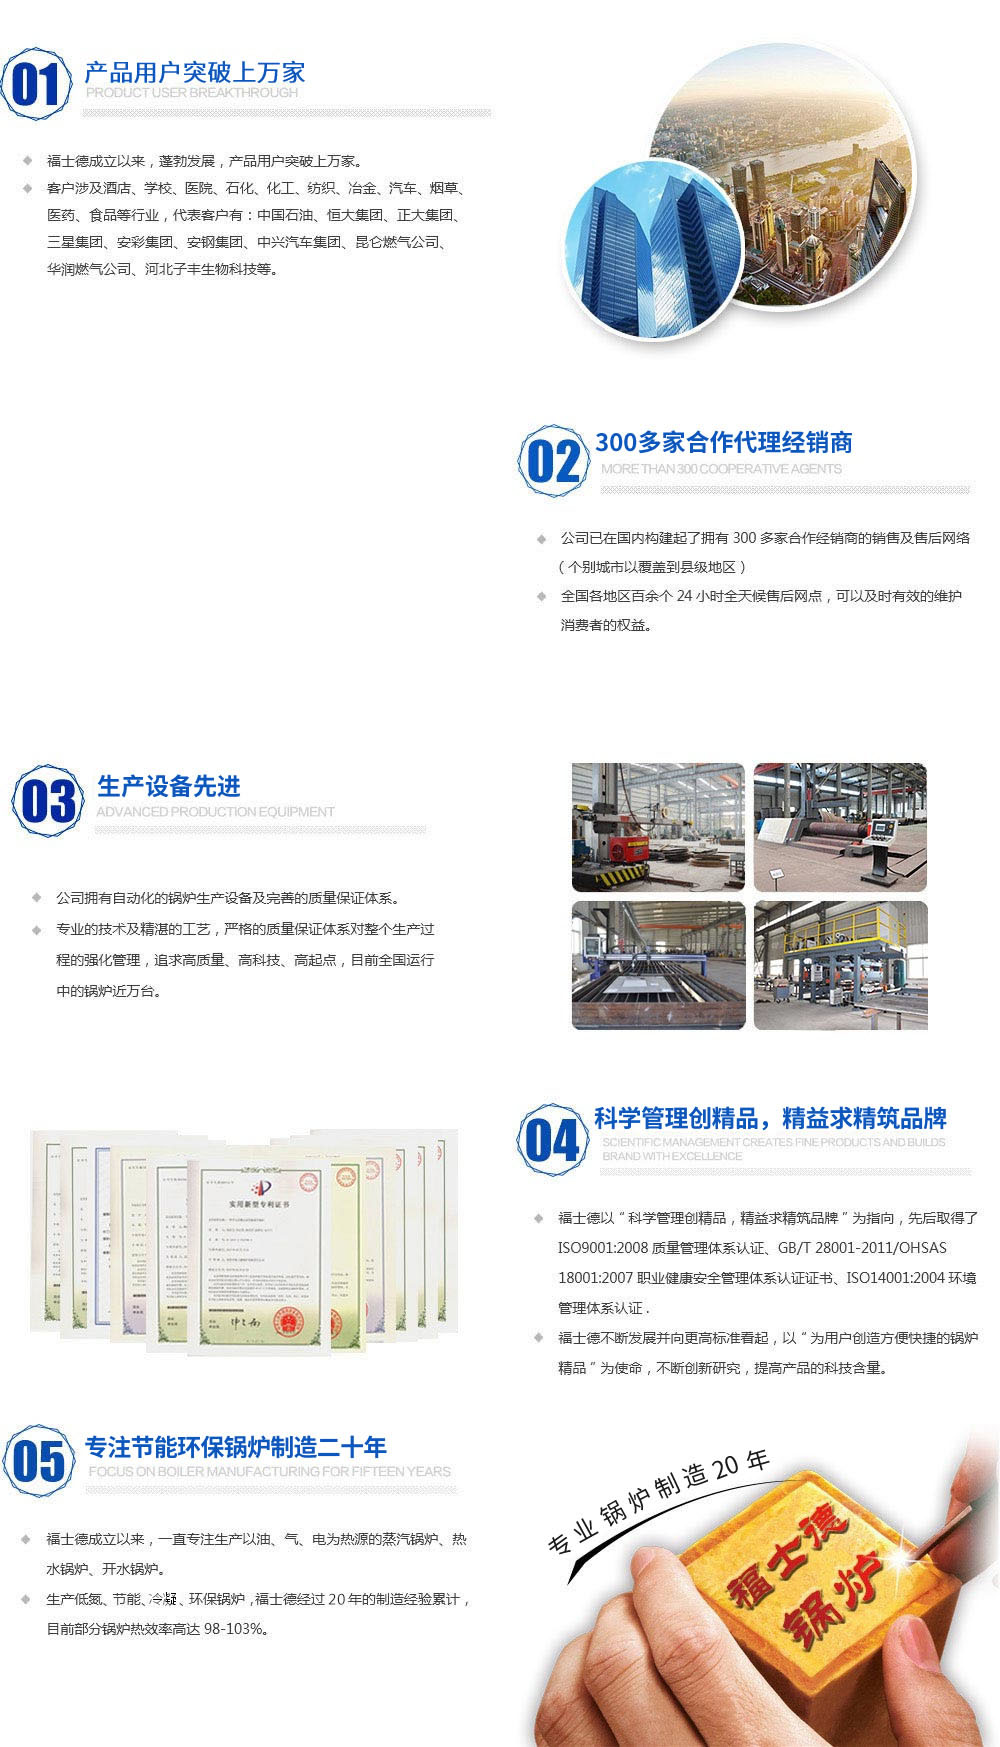 关于当前产品1388ceo彩集团大厅·(中国)官方网站的成功案例等相关图片